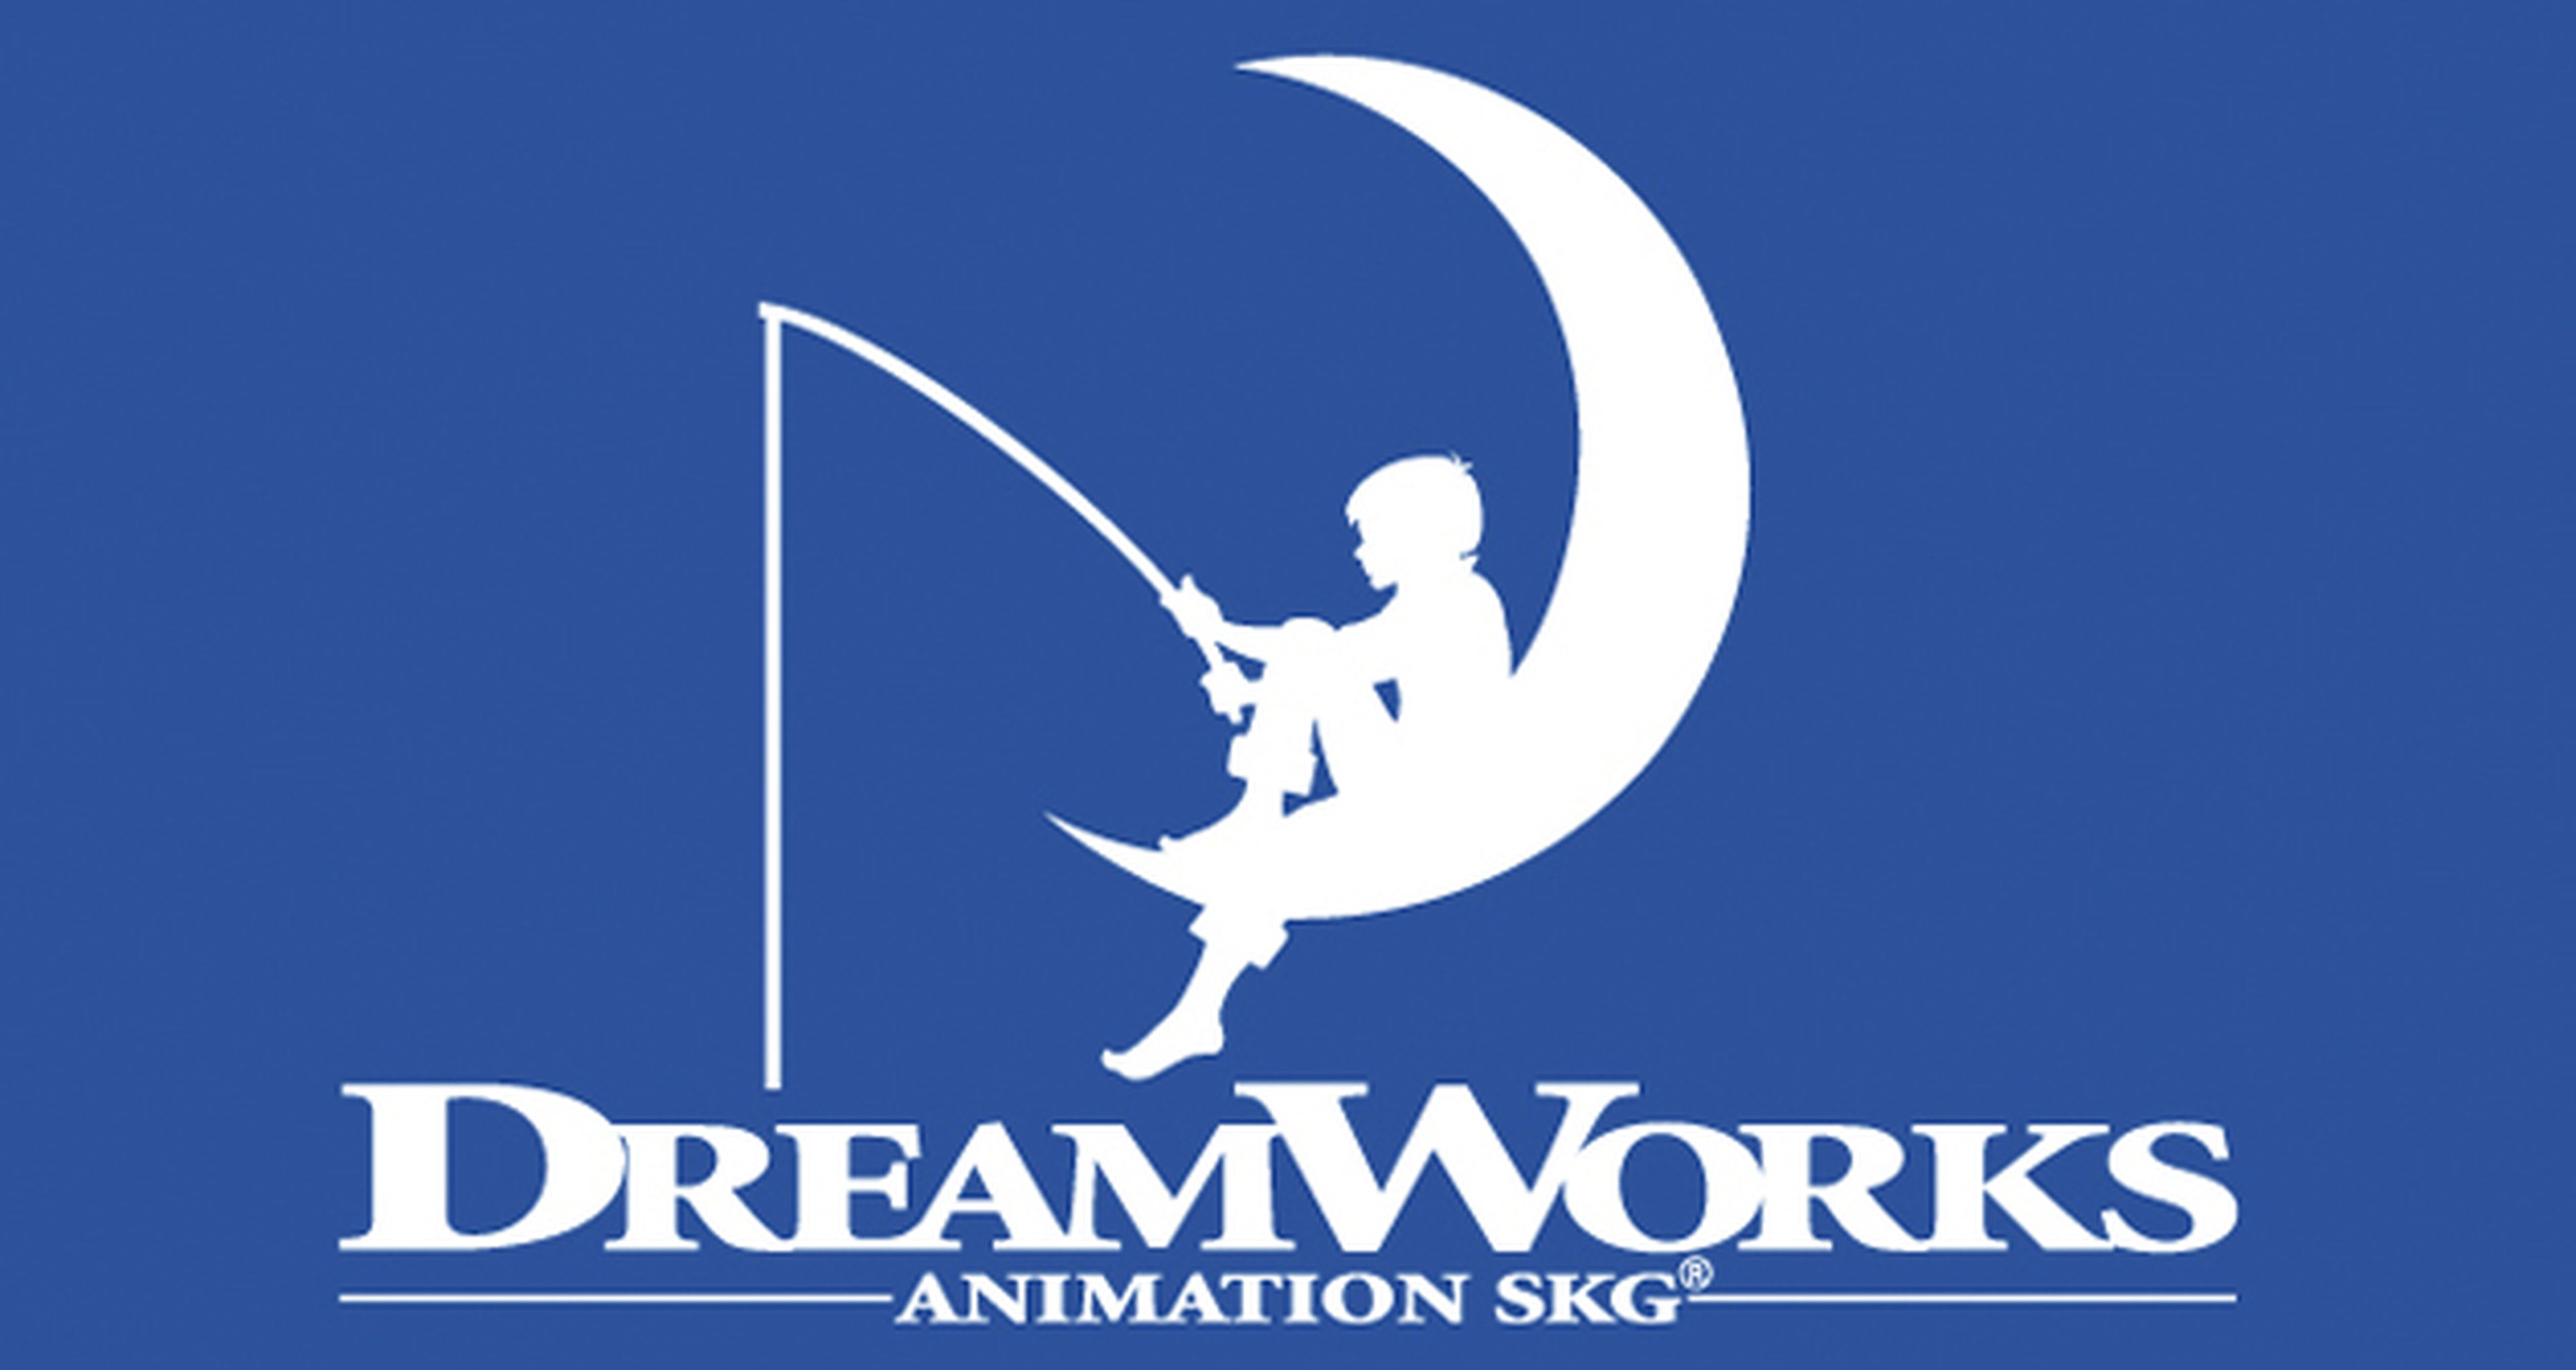 La juguetera Hasbro, a punto de comprar el estudio de animación DreamWorks